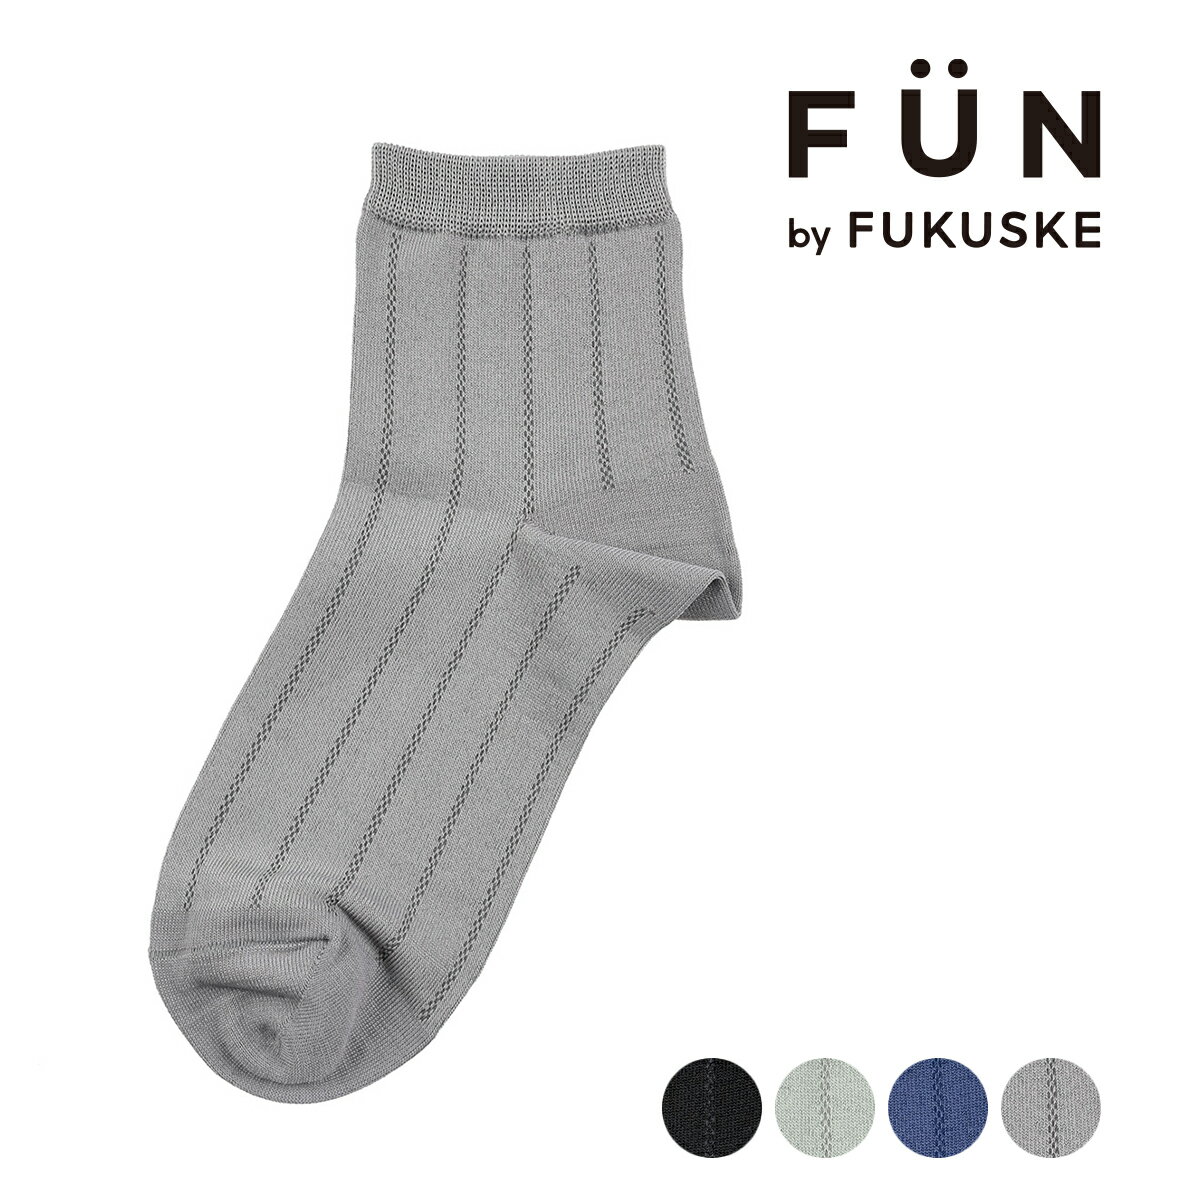 福助 靴下 レディース fukuske FUN(フクスケファン) ： キレイ見え mint feel リブ ソックス ショート丈 つま先かかと補強(3162-44M) 婦人 女性 レディース 靴下 フクスケ fukuske 福助 公式